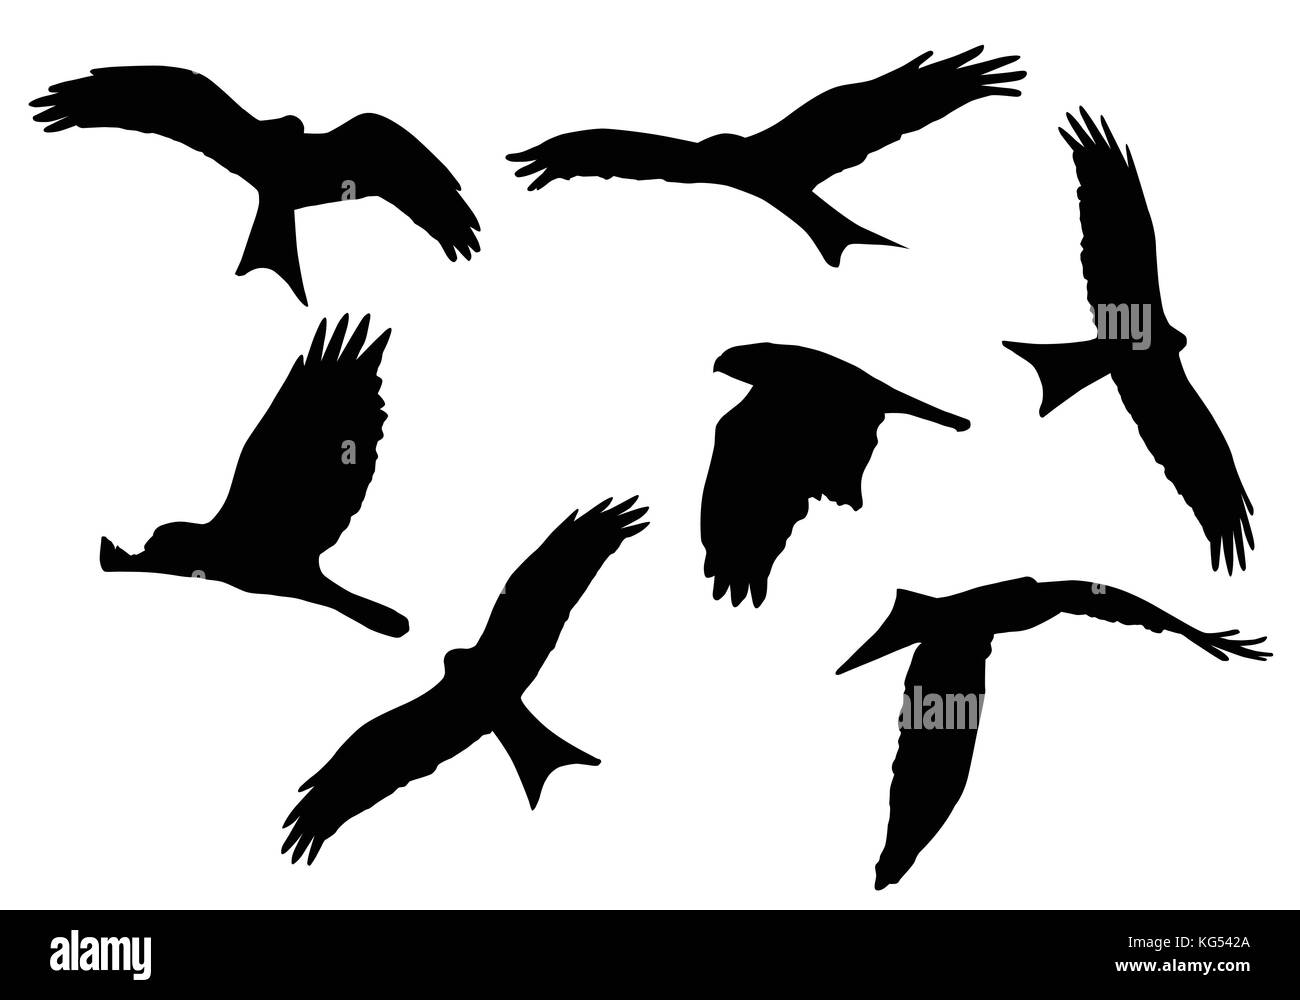 Festlegen von realistischen Vektorgrafiken von Silhouetten von fliegenden Greifvögel auf weißem Hintergrund Stock Vektor